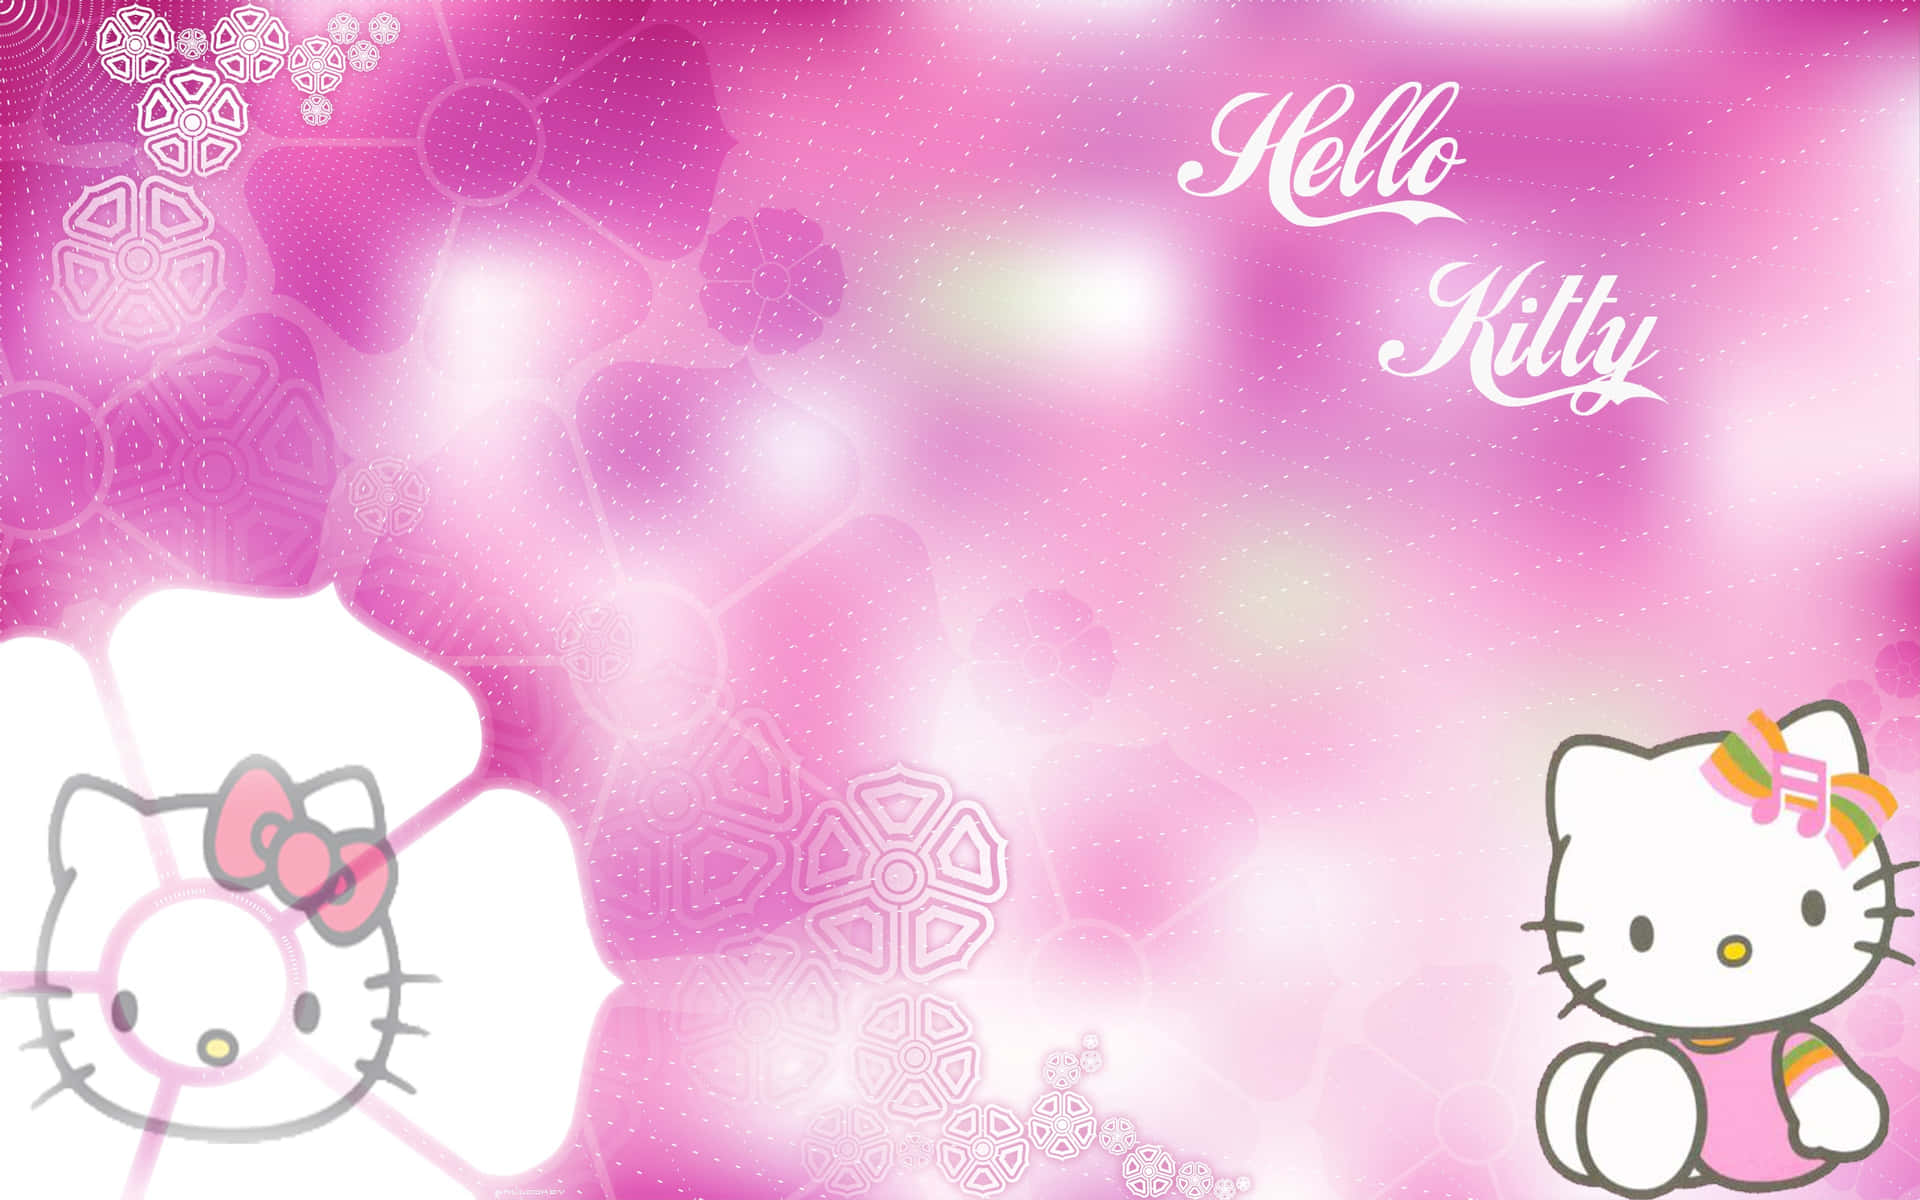 Sfondogradiente Rosa E Bianco Di Hello Kitty